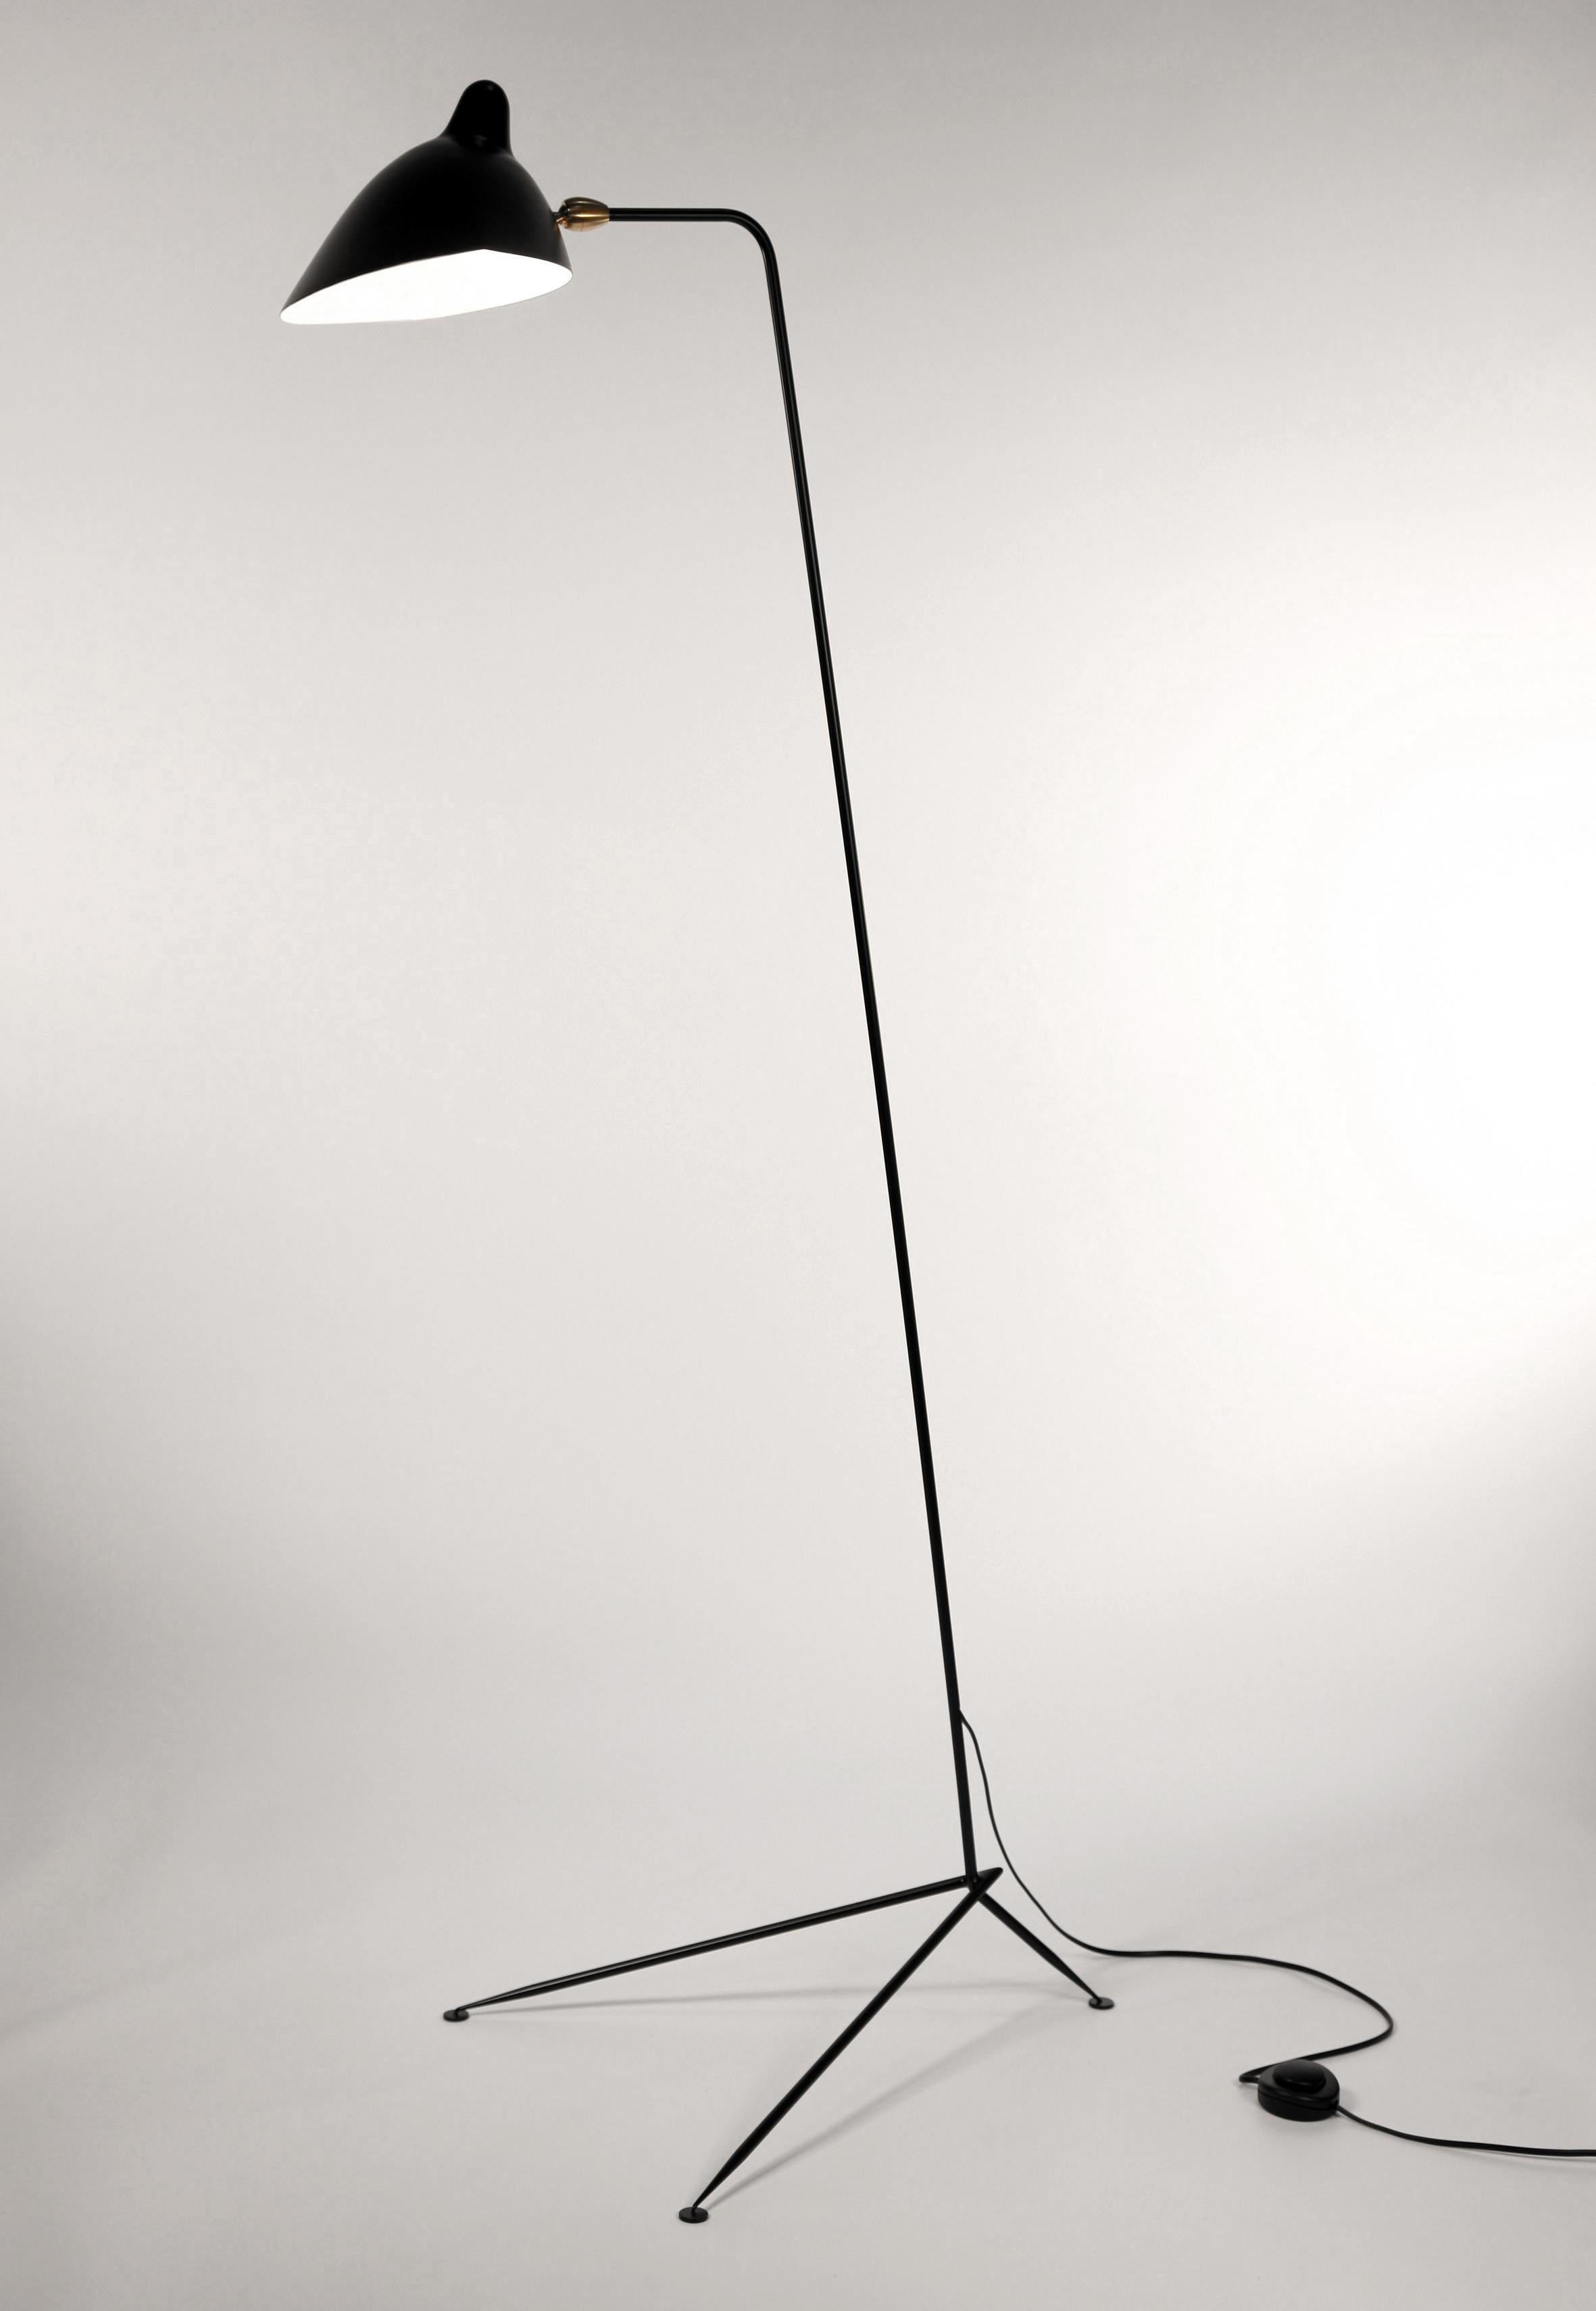 Beschreibung:
Klare, einfache Linien beschreiben die Eleganz dieser Stehleuchte von Serge Mouille. Ein langer, schlanker Arm, der von einem spitz zulaufenden dreieckigen Sockel getragen wird, ermöglicht es dem schwenkbaren Schirm, in jedem Winkel zu